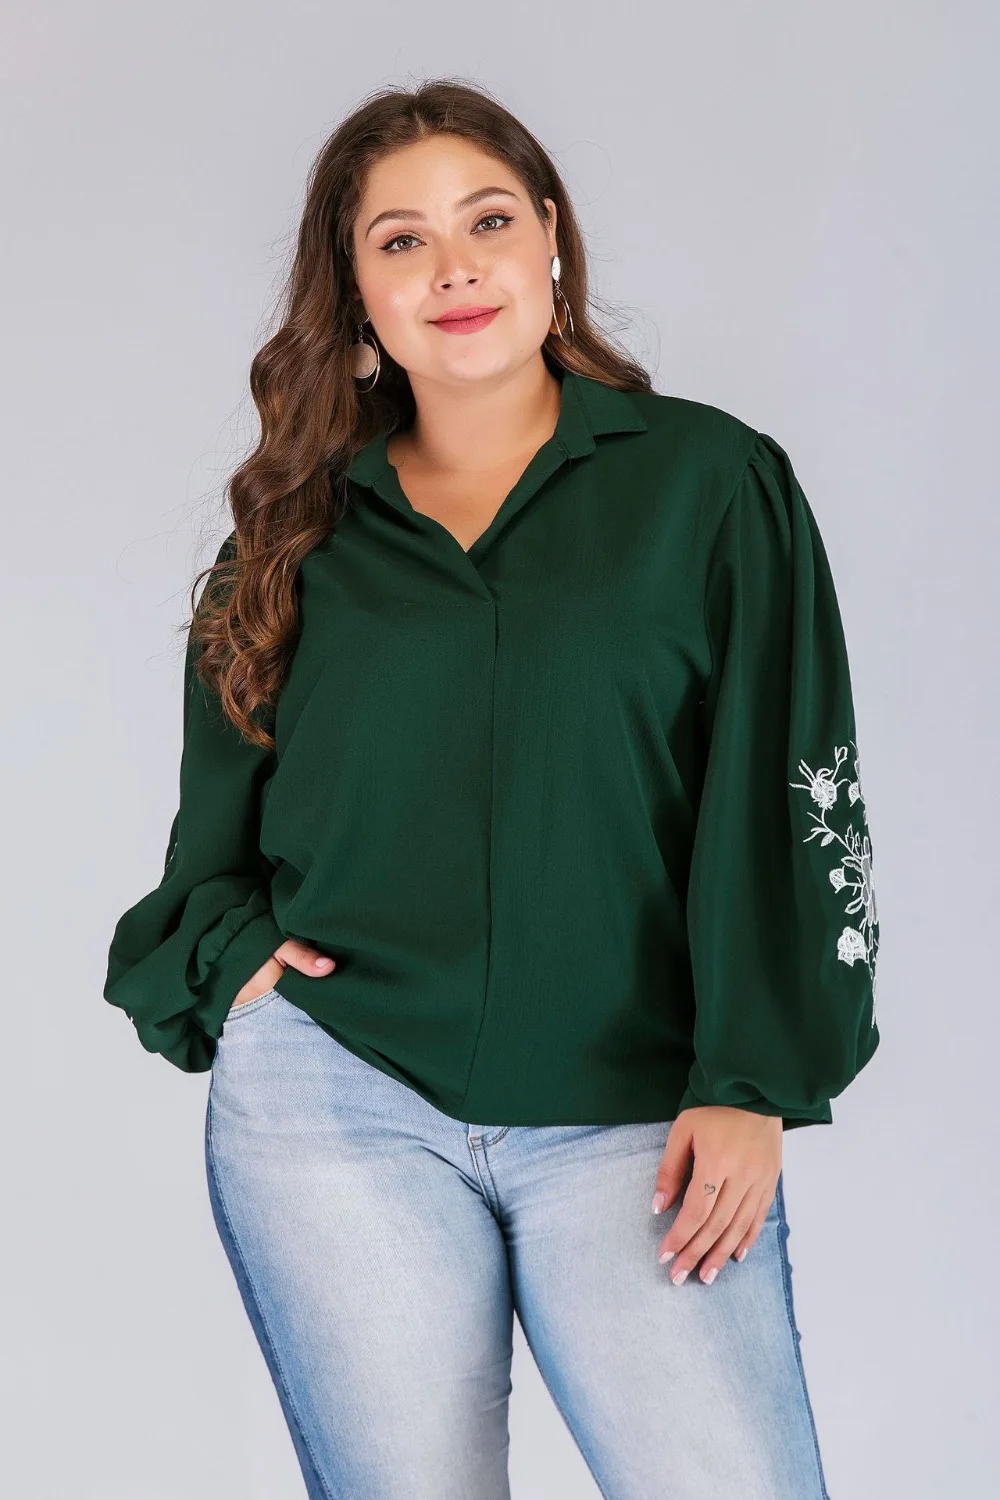 Новая мода осень зима размера плюс Топы для женщин большой длинный рукав цветок Свободная Повседневная рубашка с v-образным вырезом Зеленый 4XL 5XL 6XL 7XL